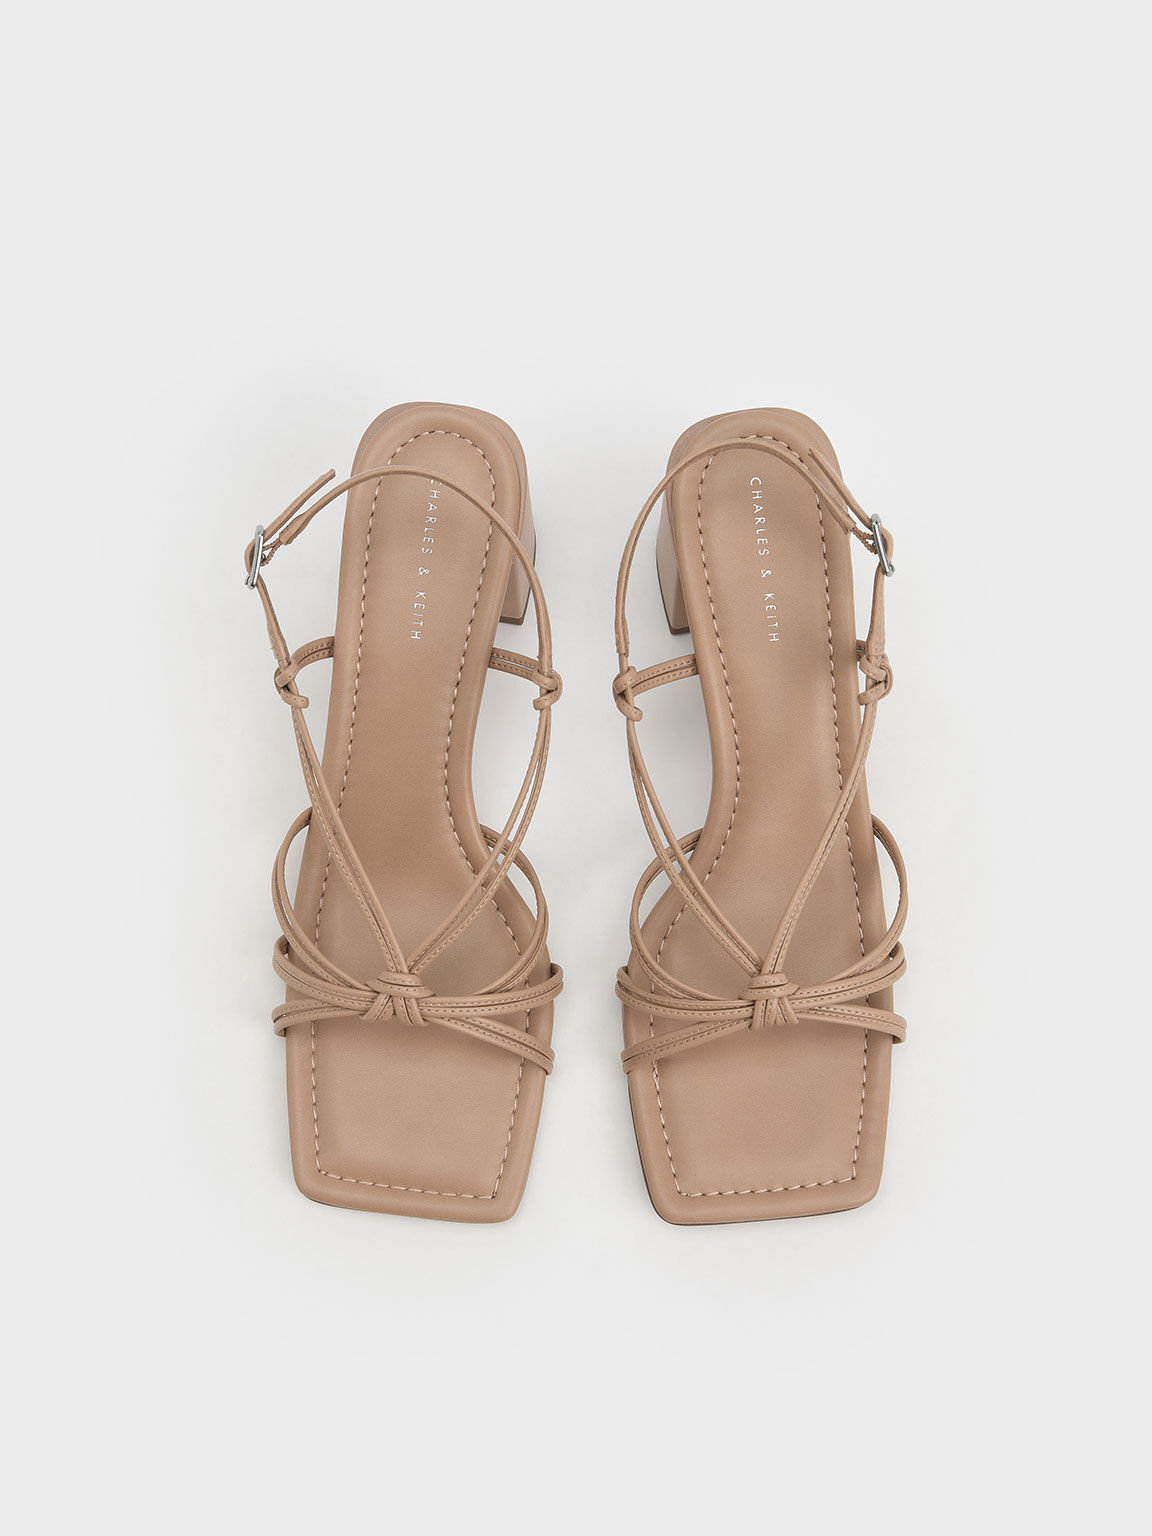 Knotted Slingback Heeled Sandals, Camel, hi-res